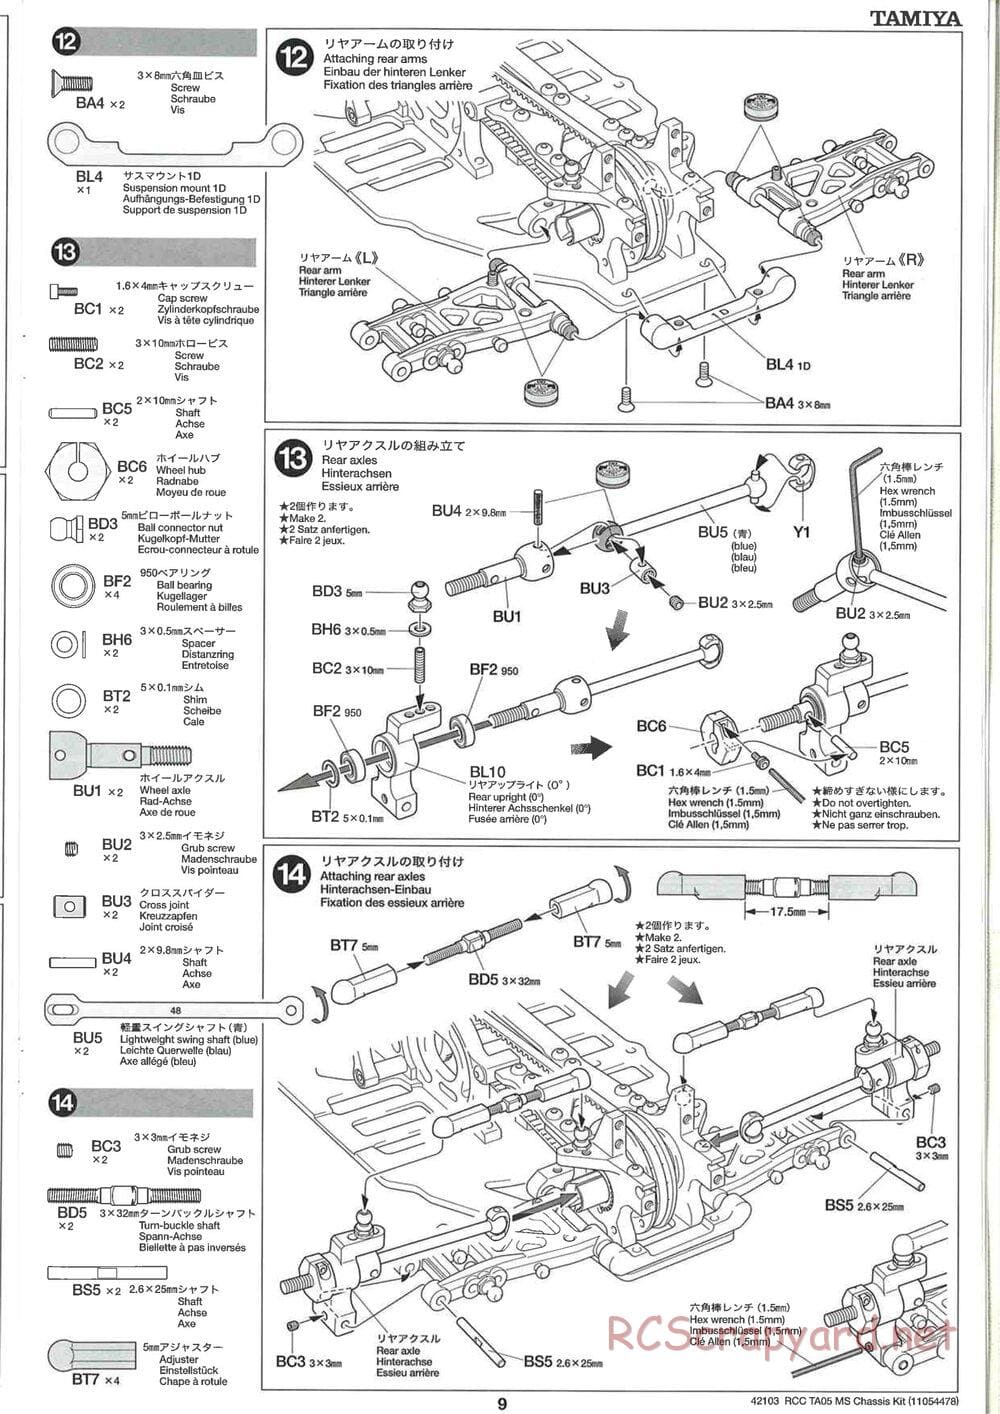 Tamiya - TA05 MS Chassis - Manual - Page 9